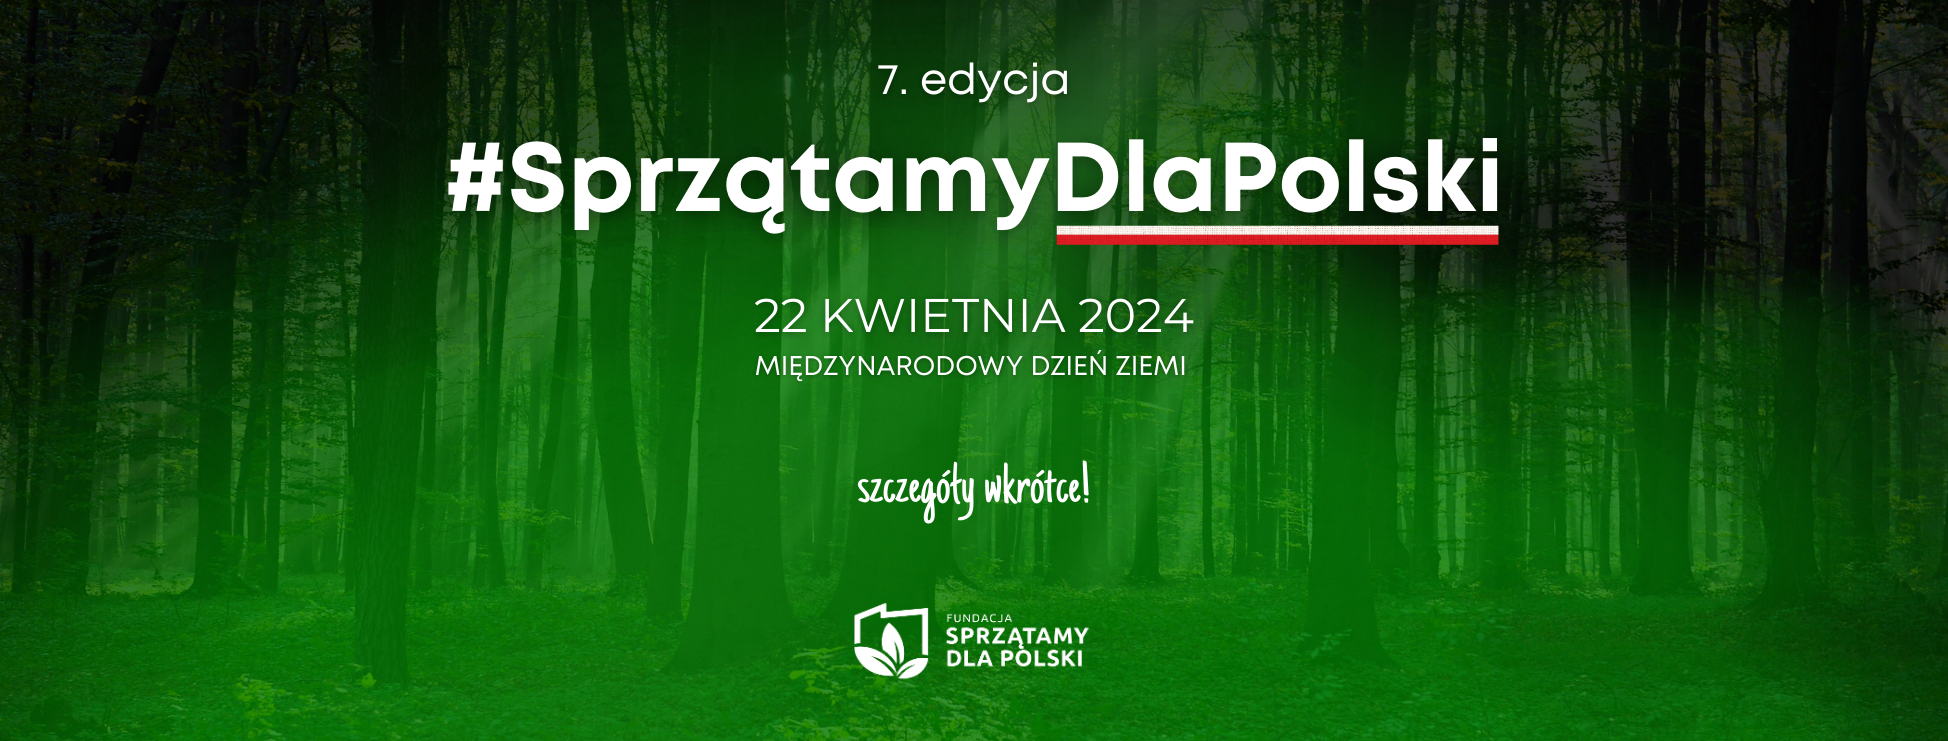 logo akcji Sprzątamy dla Polski